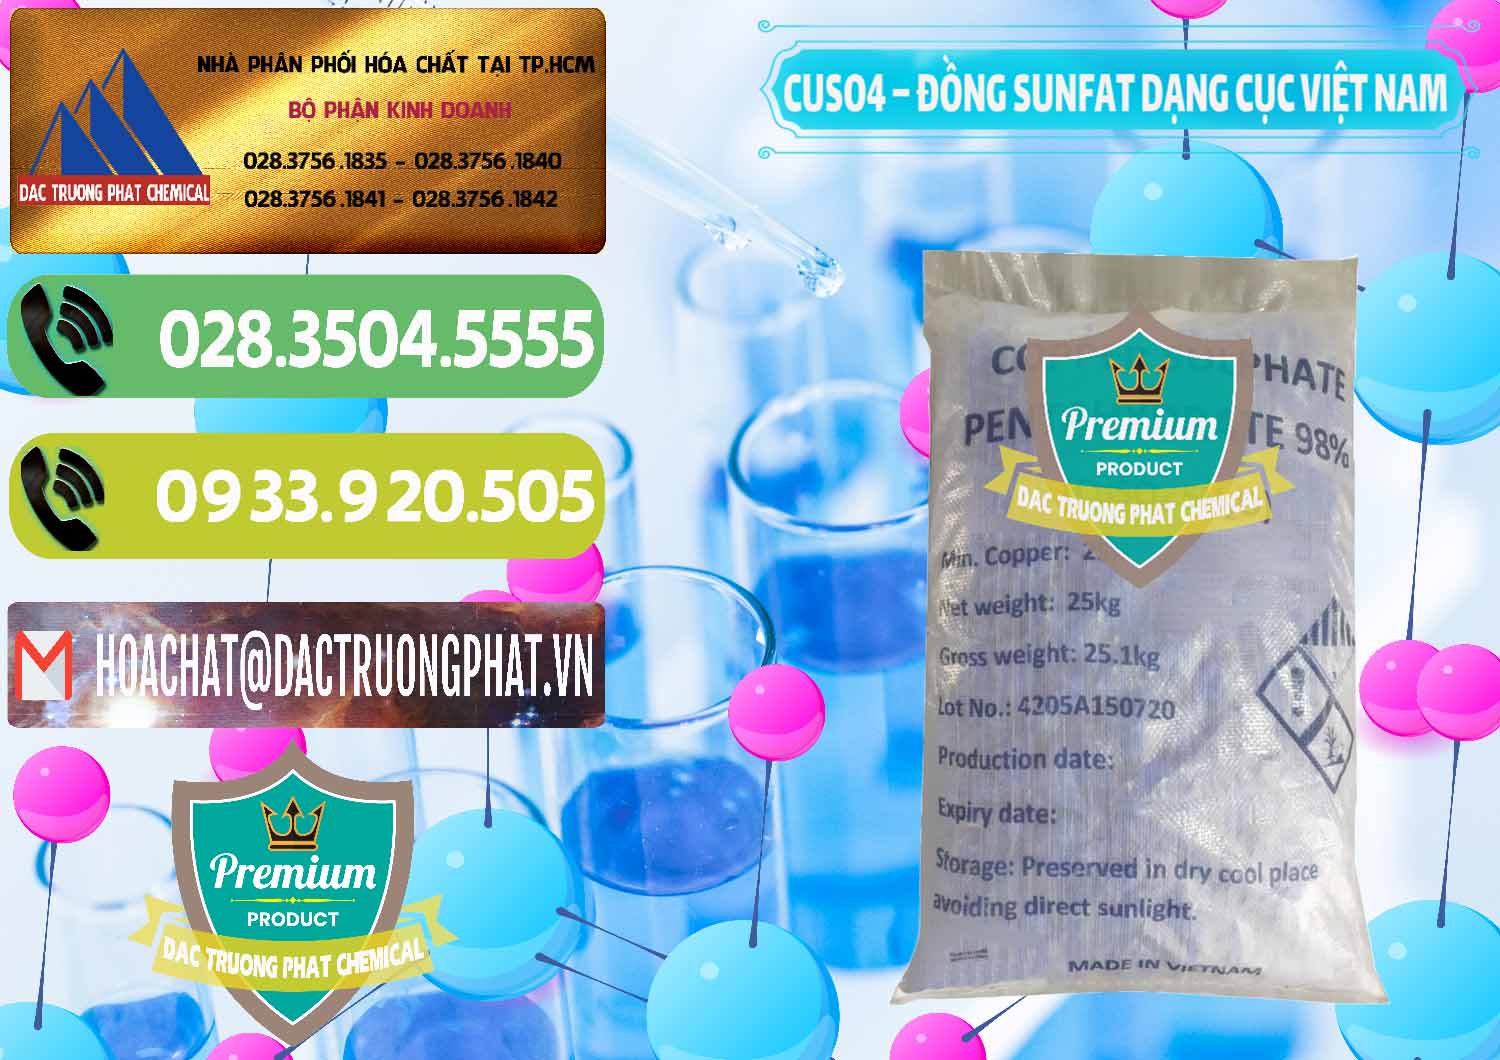 Công ty chuyên kinh doanh & phân phối CUSO4 – Đồng Sunfat Dạng Cục Việt Nam - 0303 - Cty chuyên kinh doanh và cung cấp hóa chất tại TP.HCM - hoachatmientay.vn